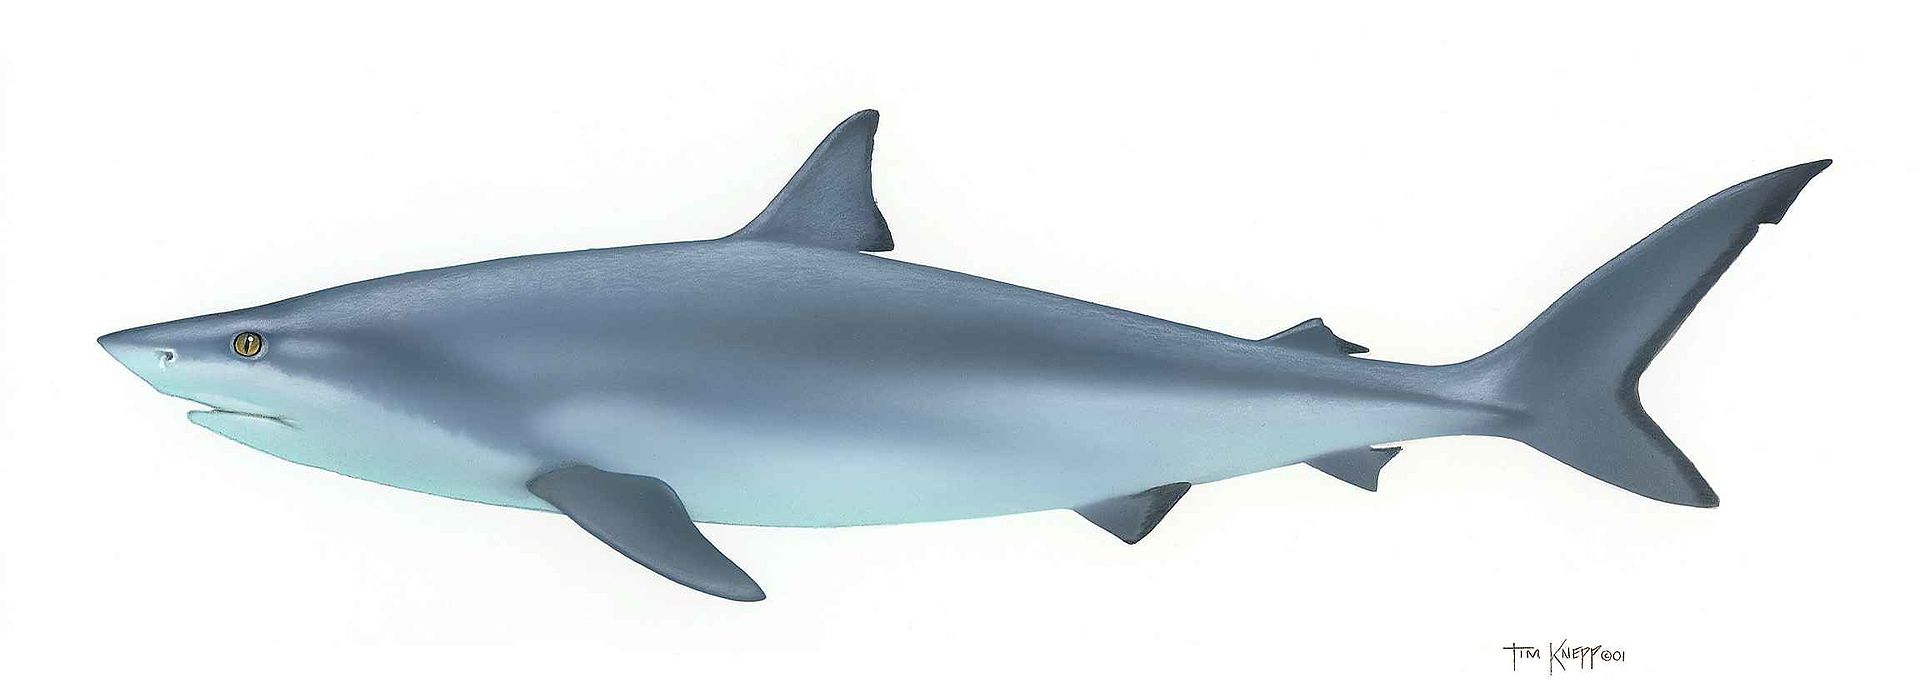 Cá mập bò mắt trắng nặng bao nhiêu? Sống ở đâu, ăn gì